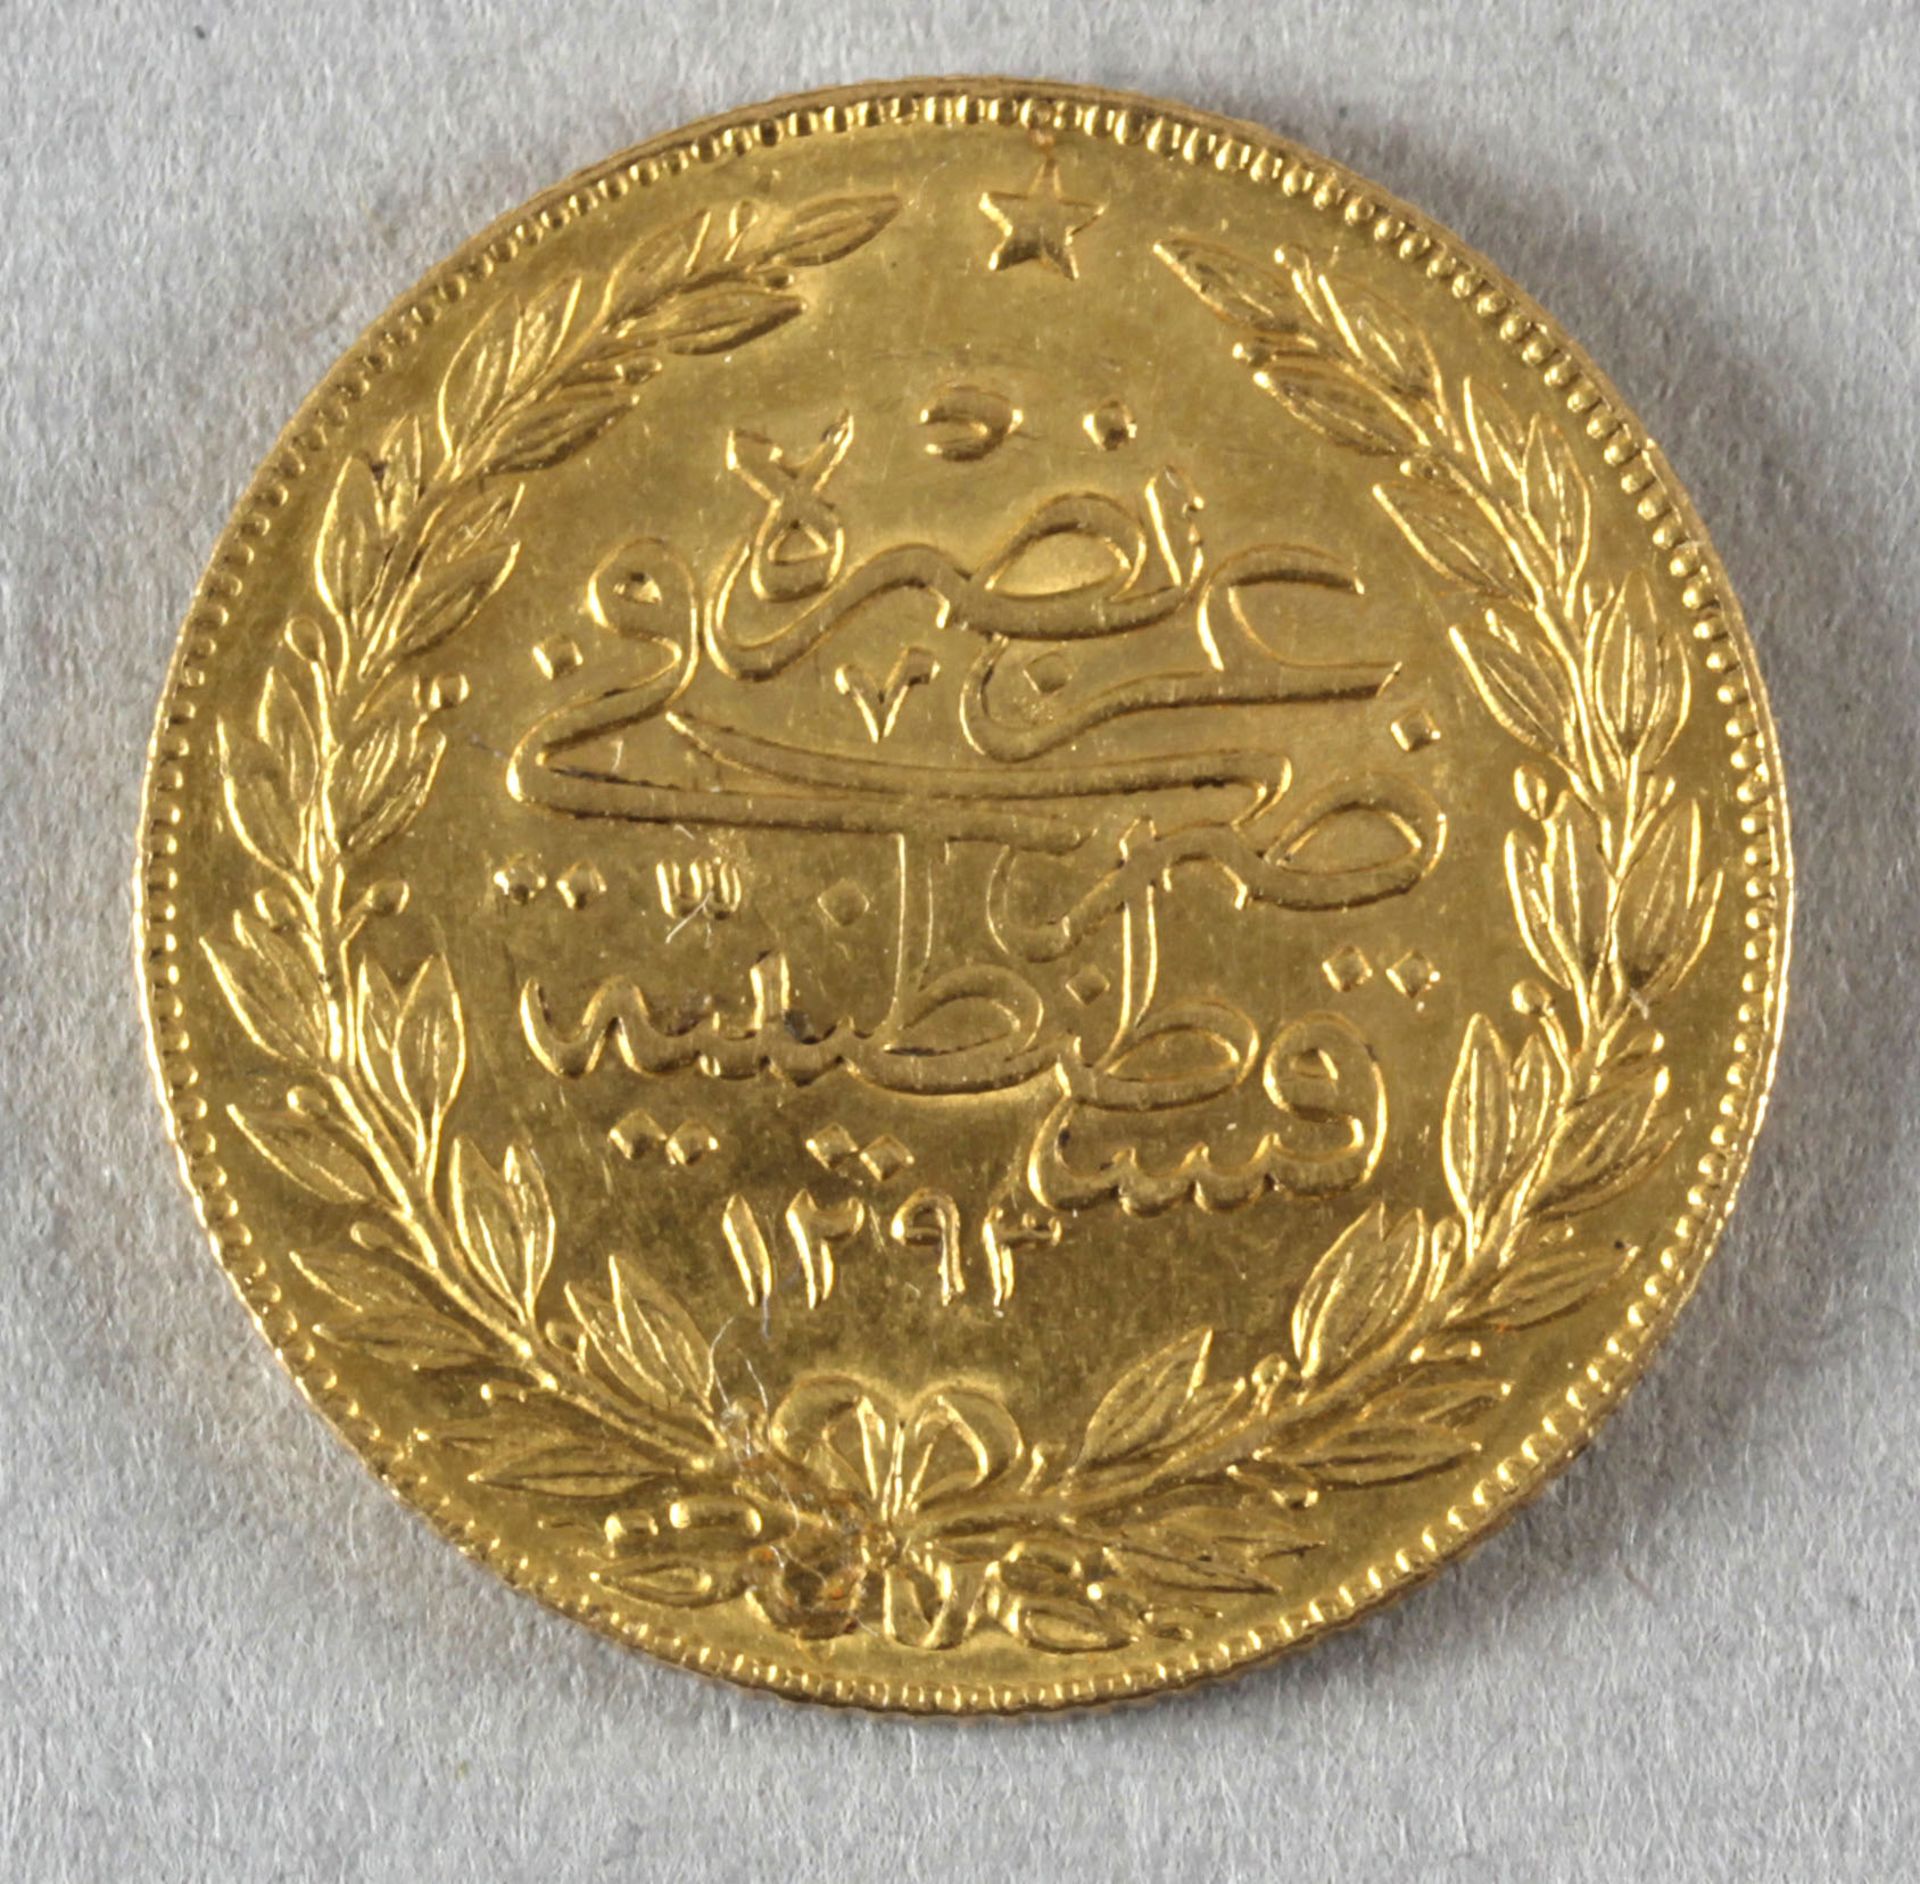 Goldmünze, 100 Kurush (Piaster), Osmanisches Reich, 1907 (1293), Tughra - Bild 2 aus 2